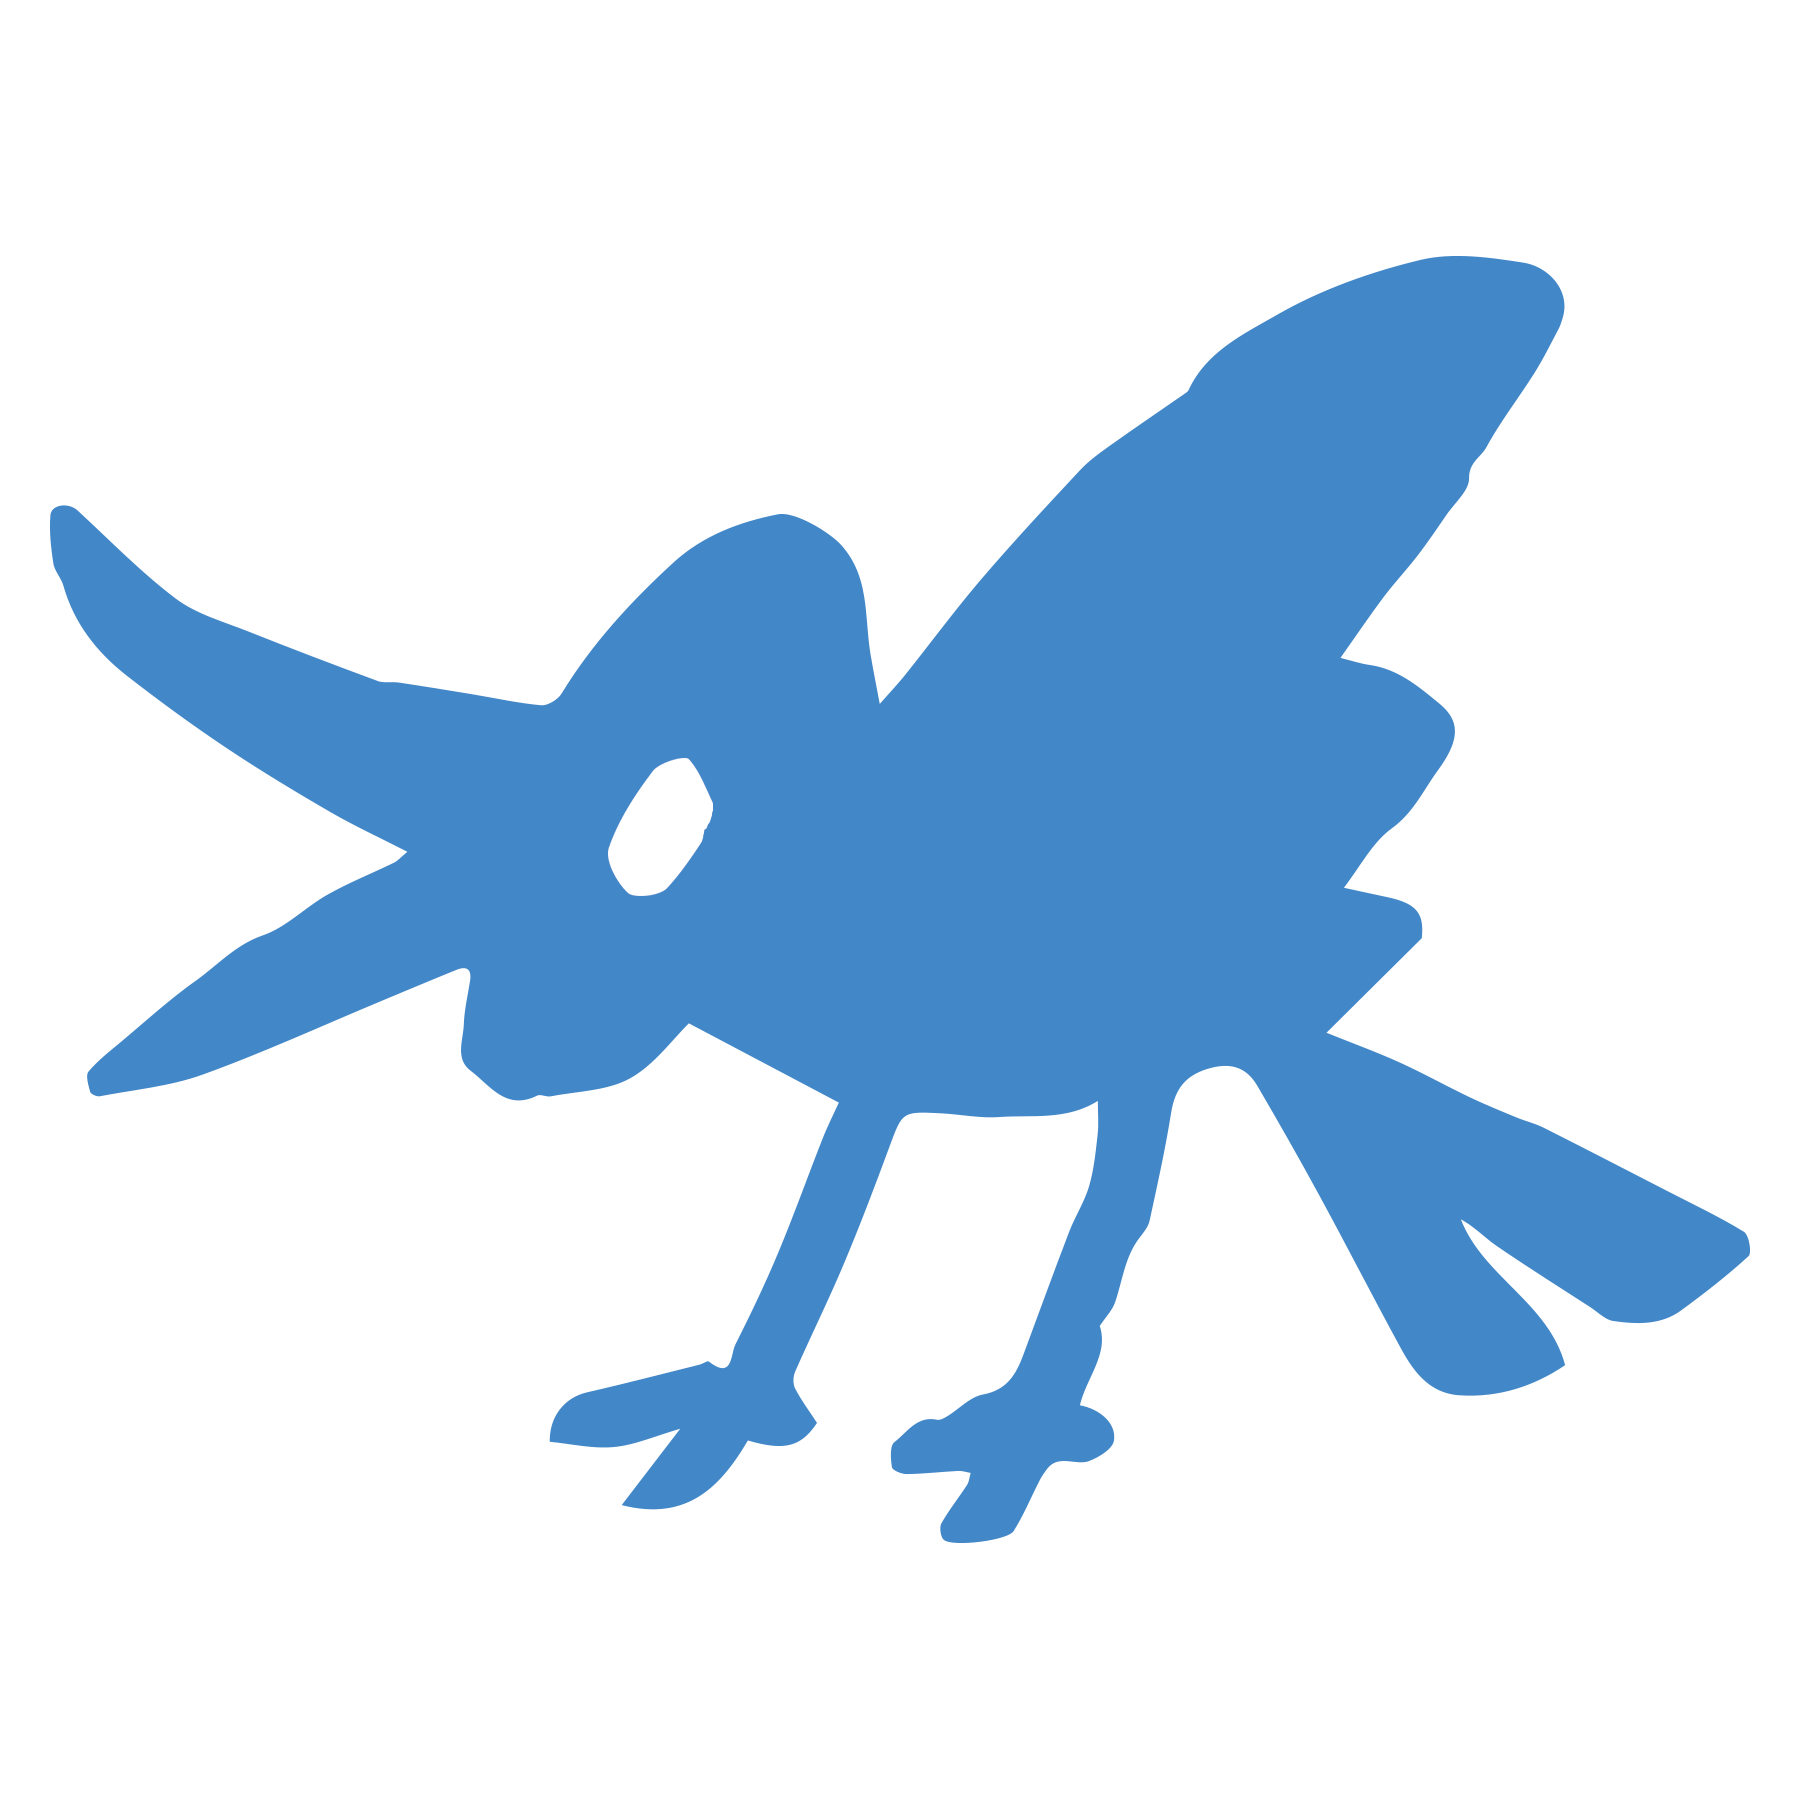 Twitterっぽい青い鳥のイラスト ゆるくてかわいい無料イラスト アイコン素材屋 ぴよたそ